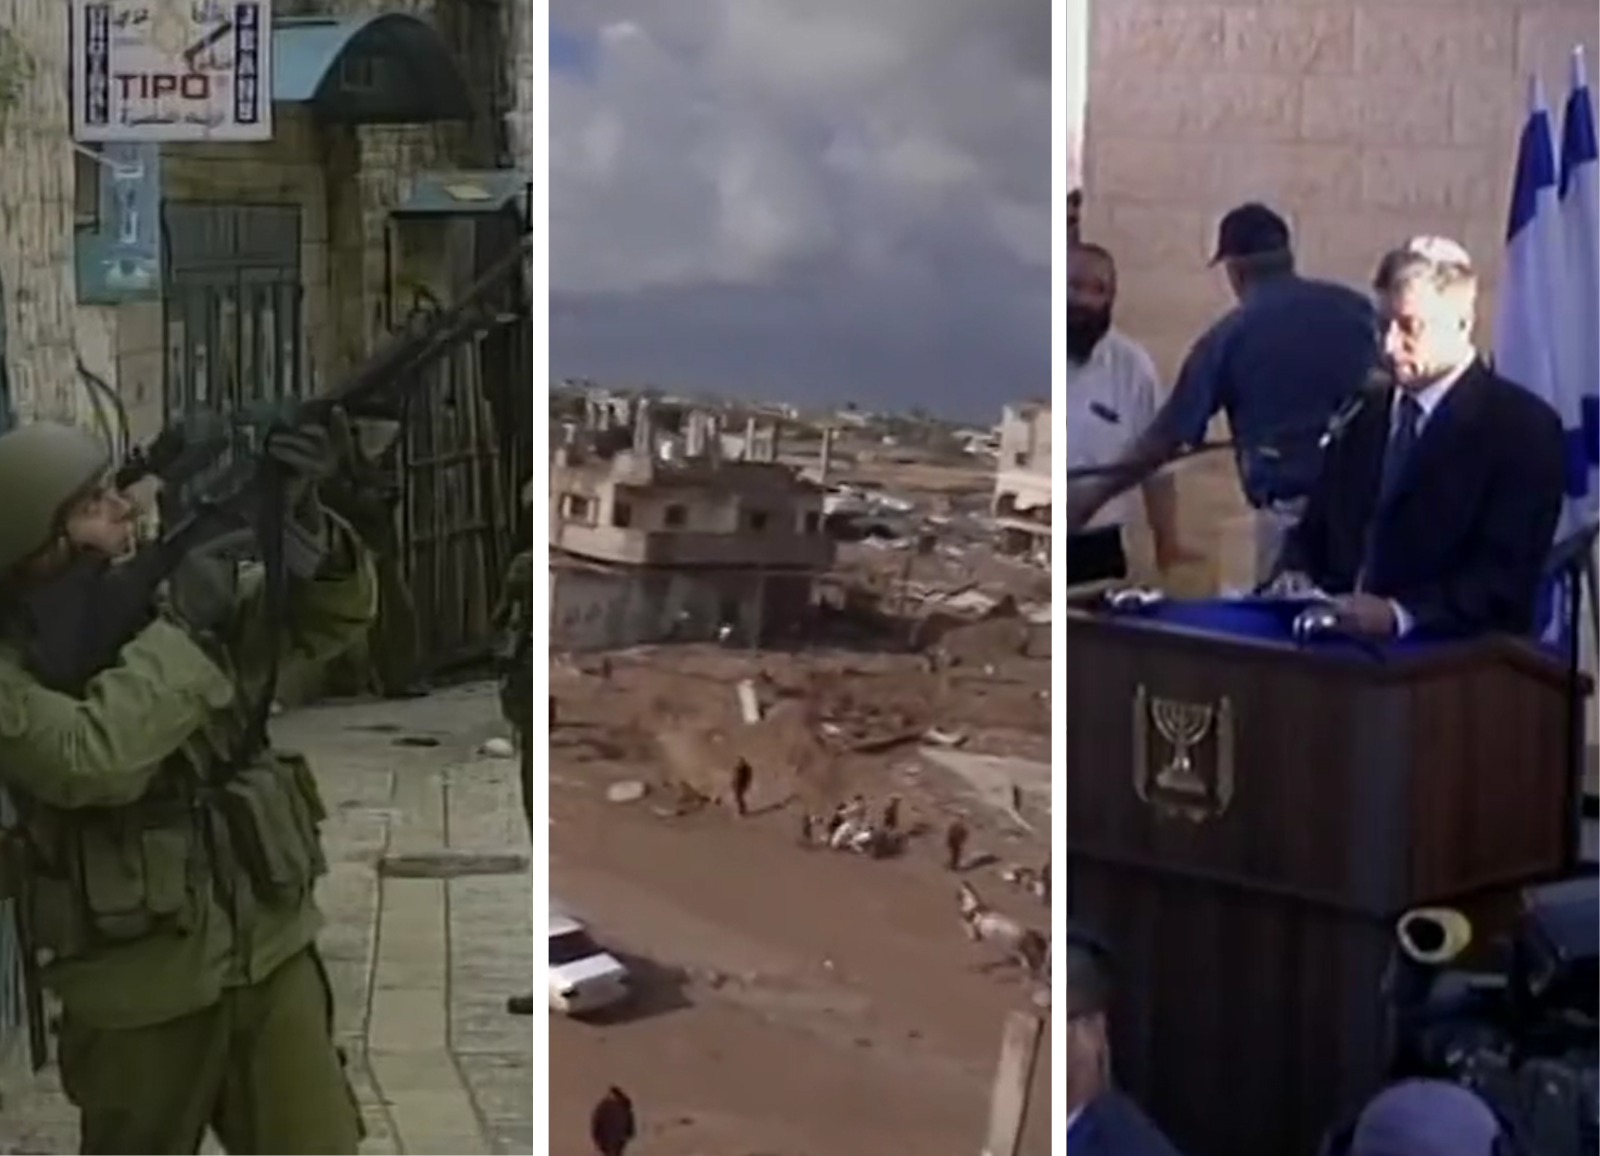 captures d'écran de JT évoquant le conflit israélo-palestinien